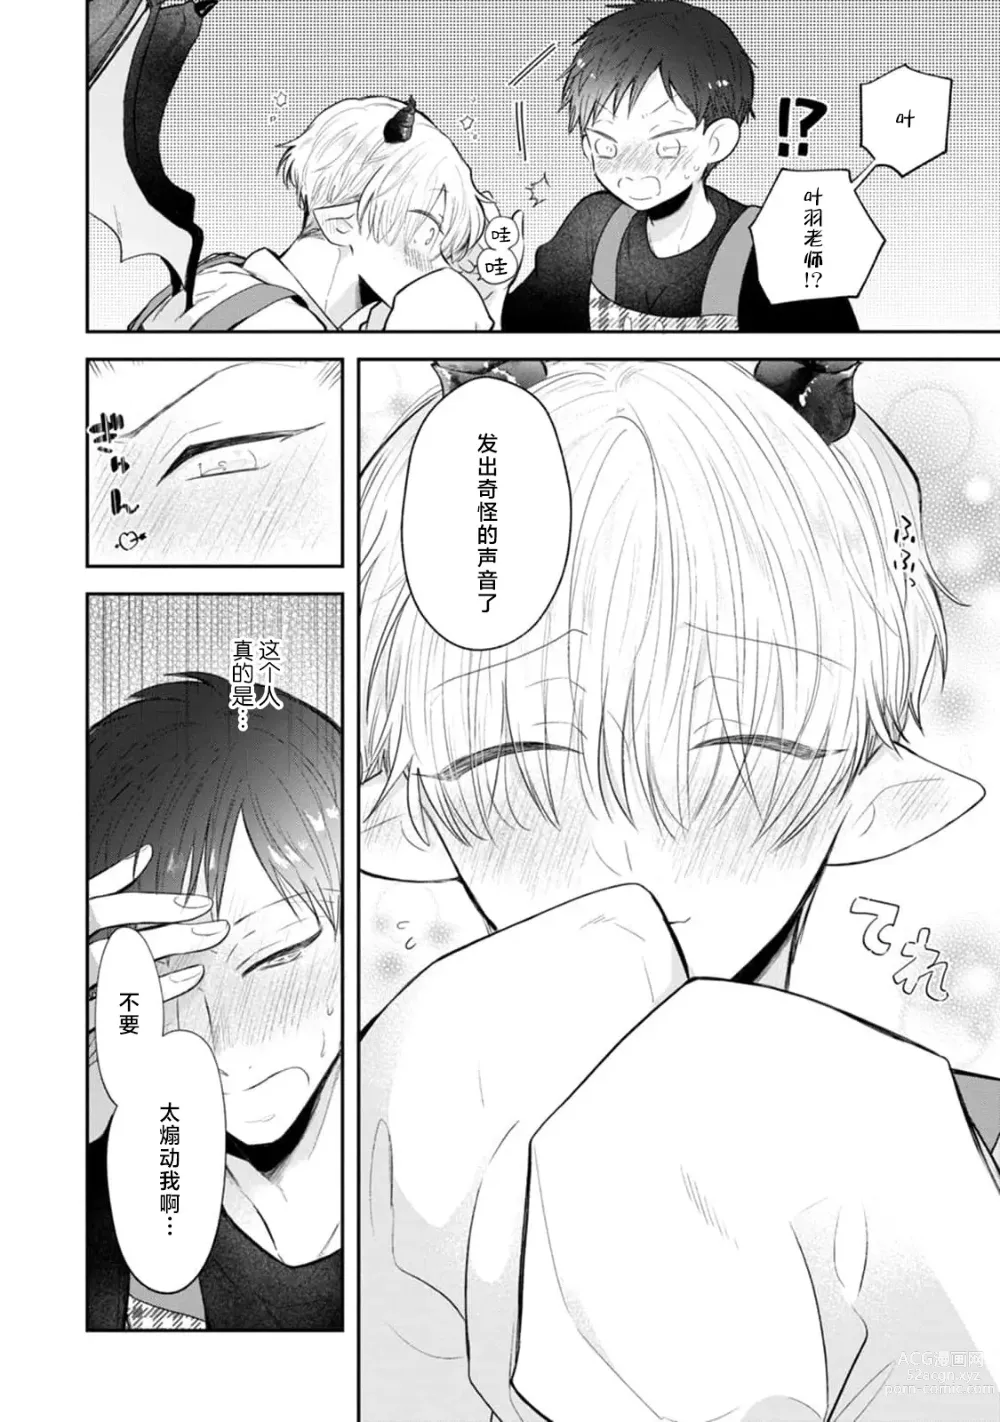 Page 4 of manga 叶羽老师全部是第一次 1-4